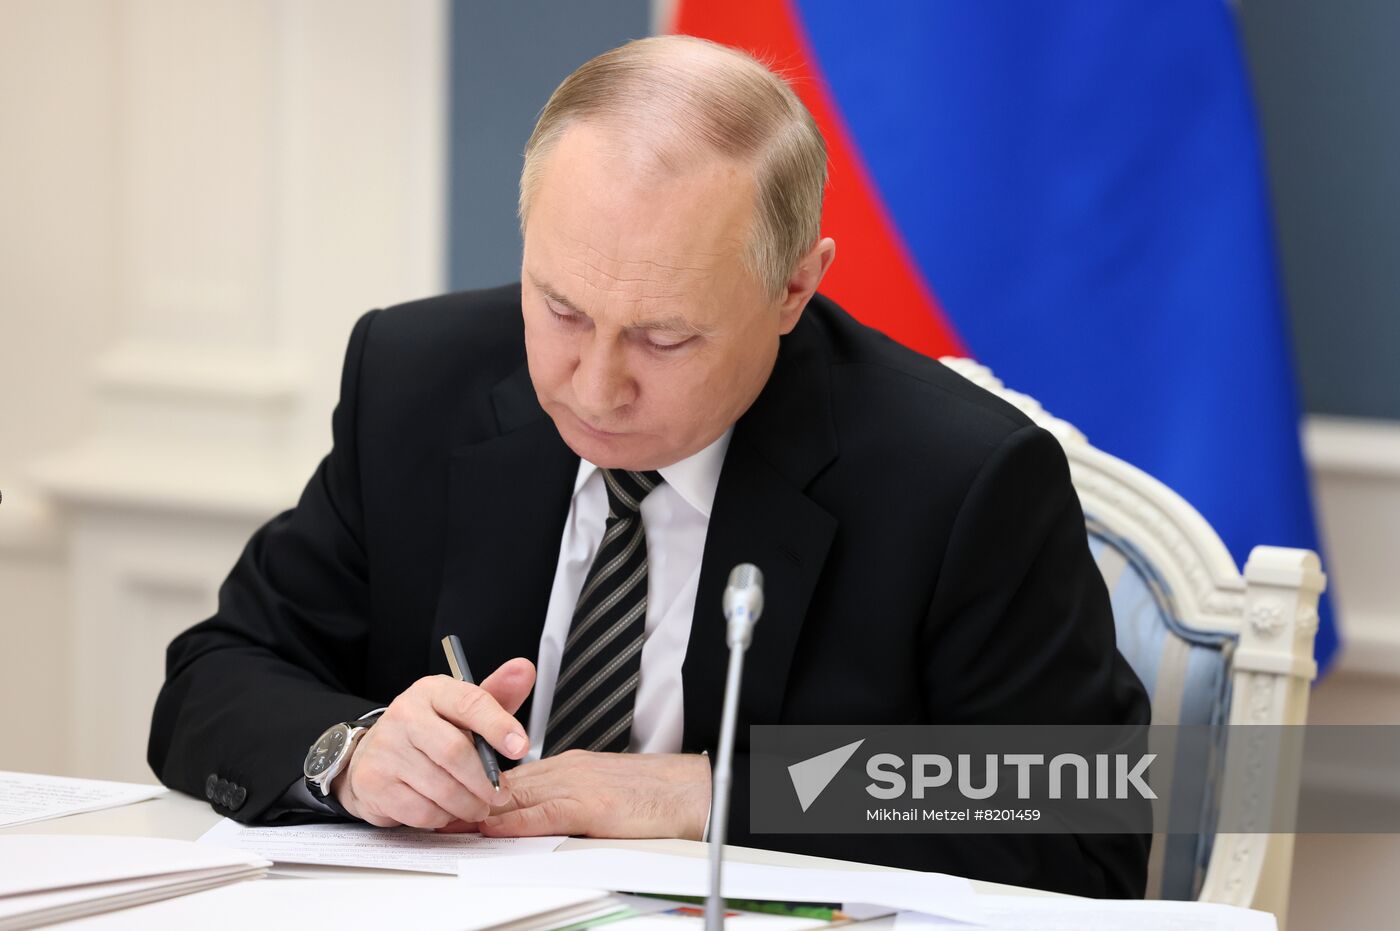 Russia Putin Eurasian Economic Council